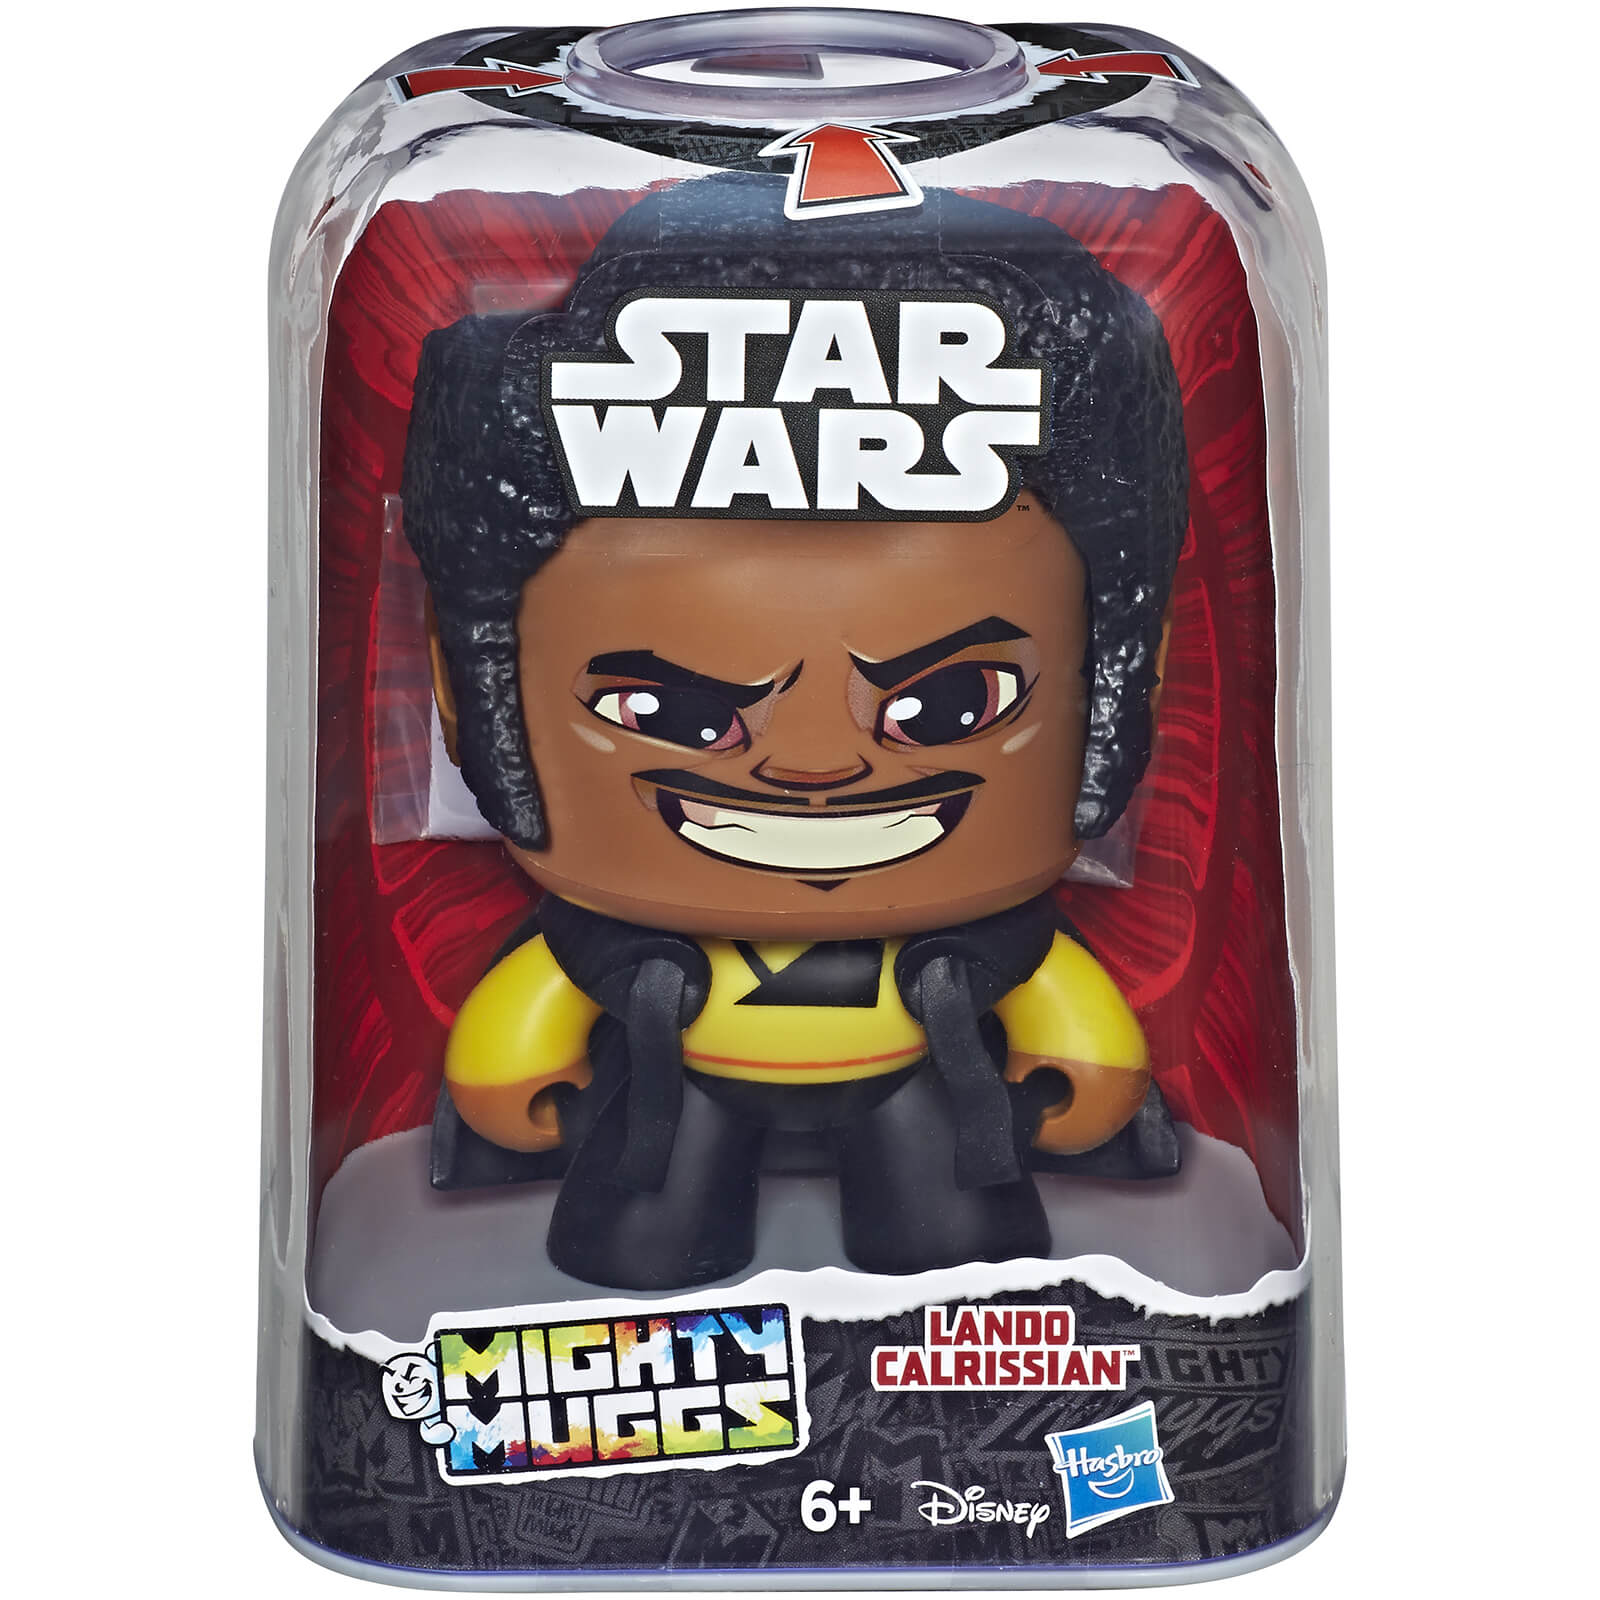 Mighty Muggs Star Wars Mighty Muggs - Lando Calrissian